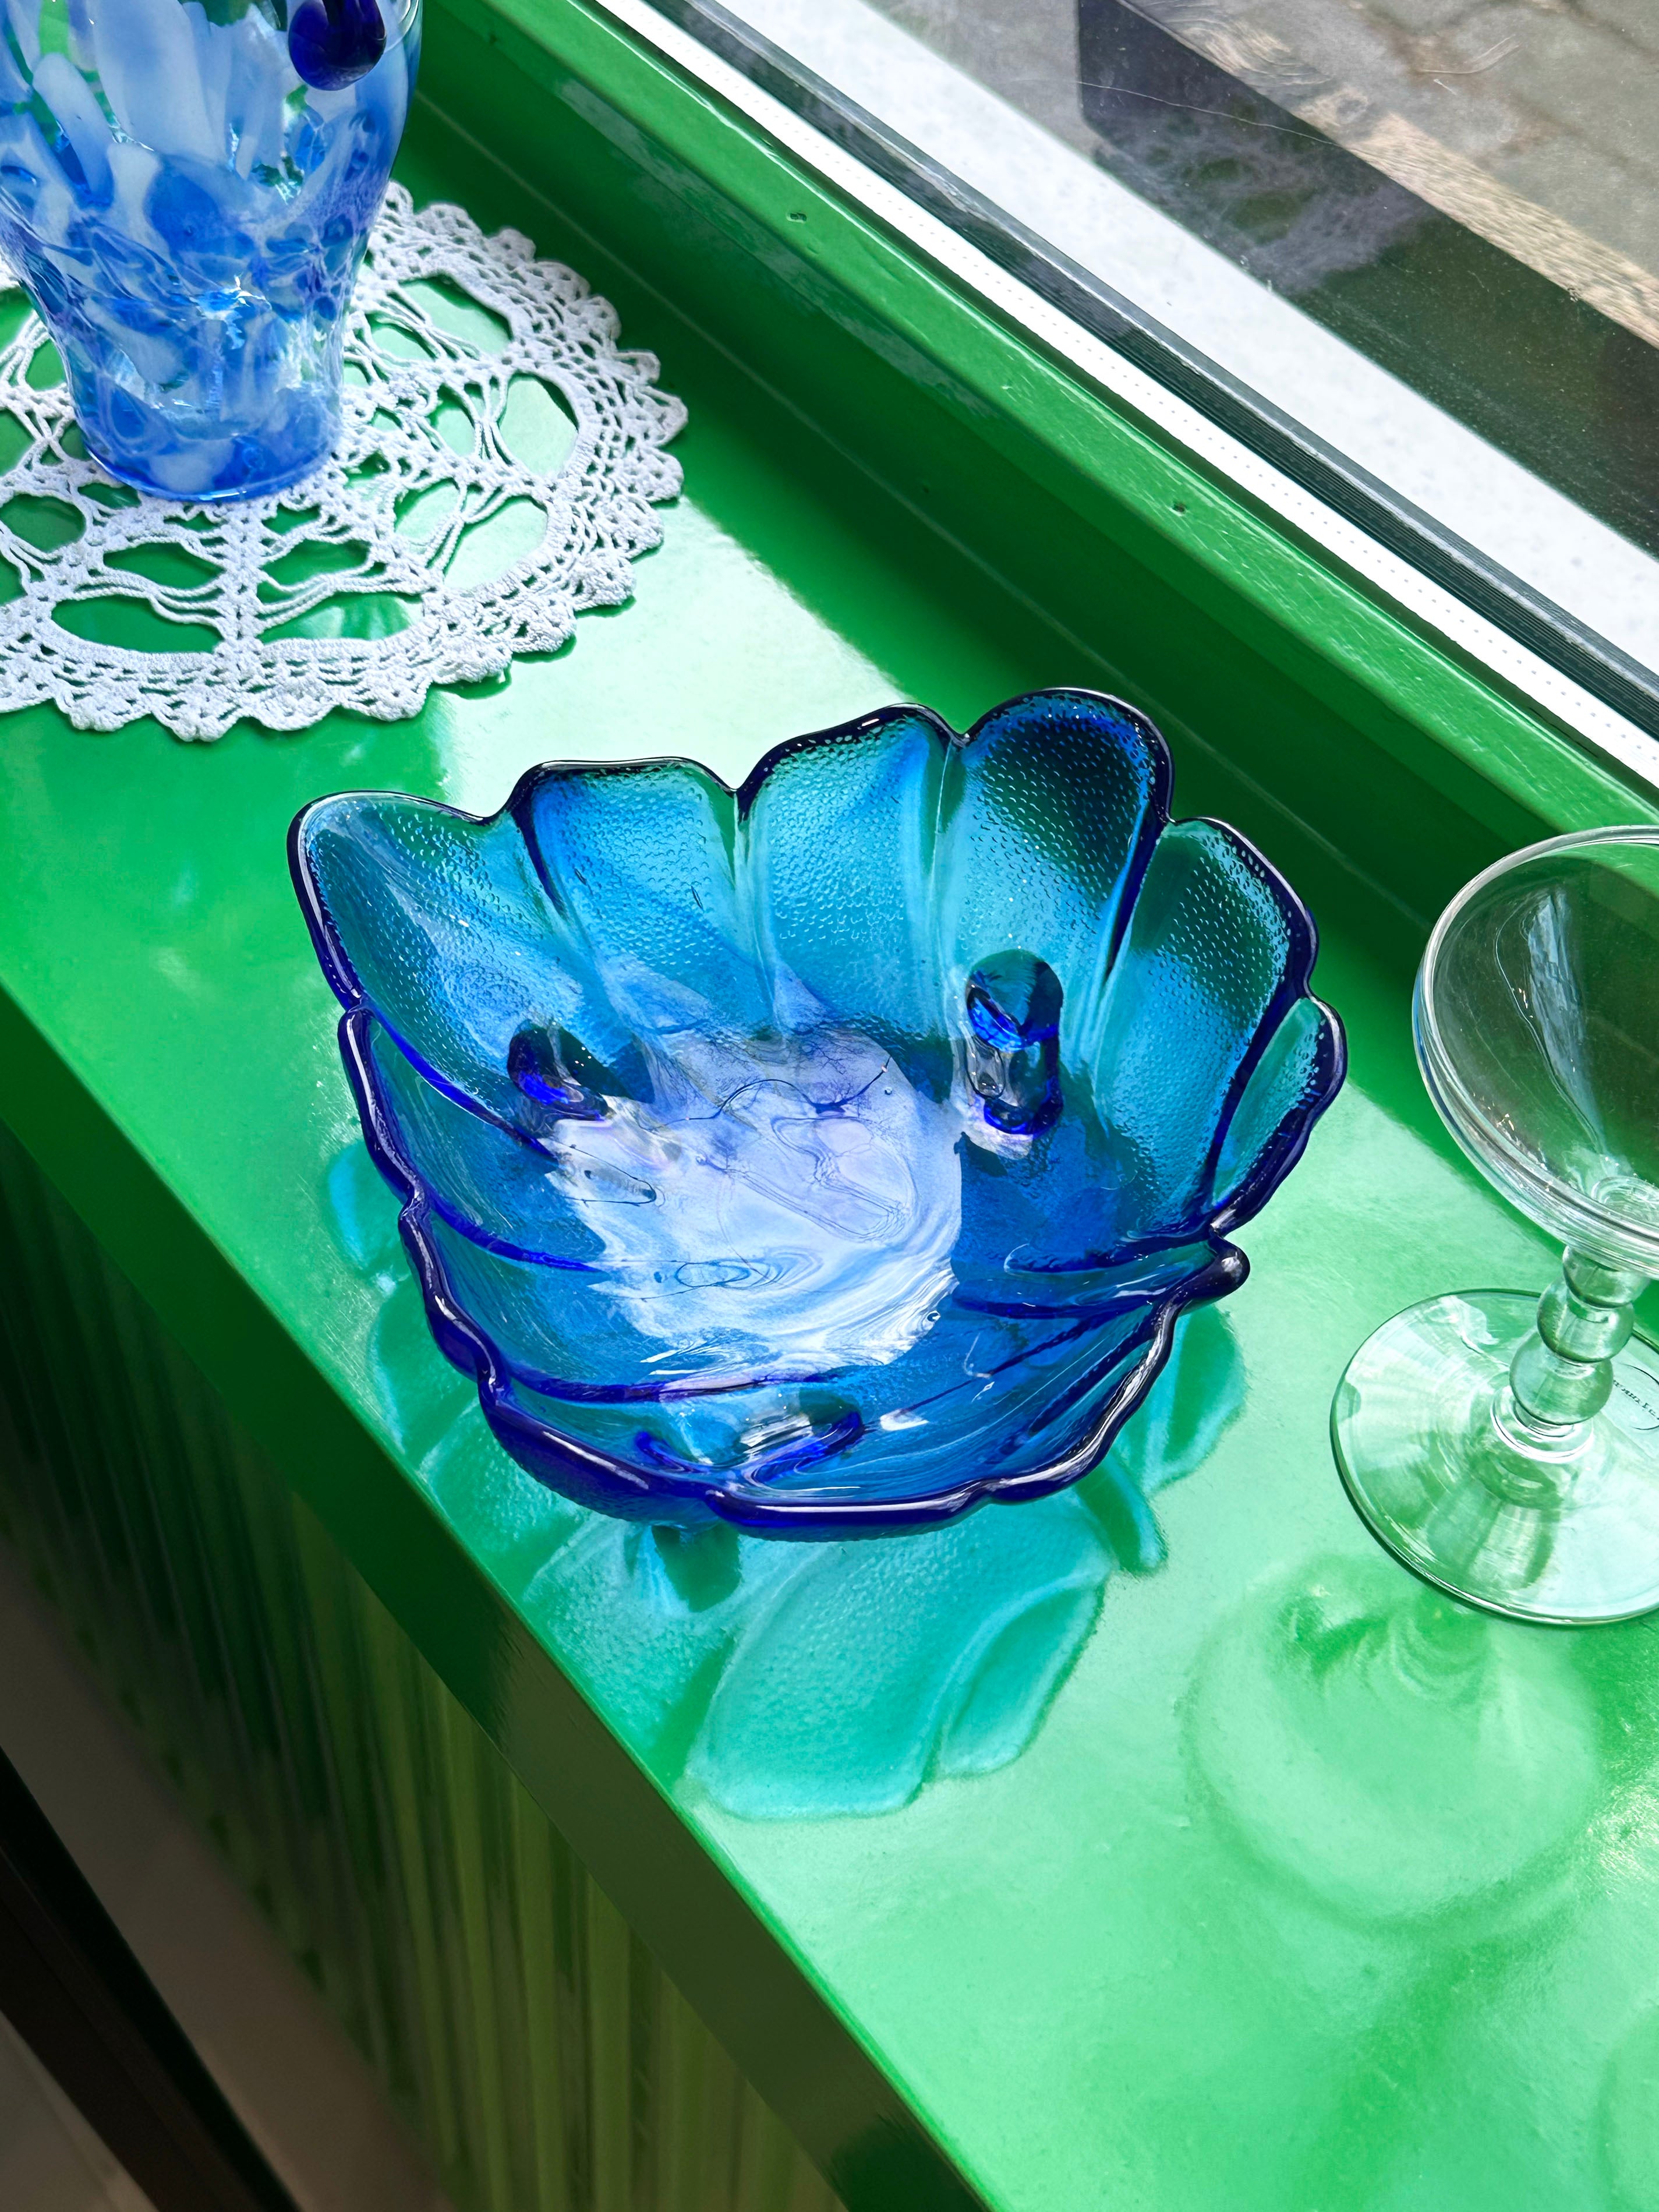 Cobalt blue glass leaf bowl